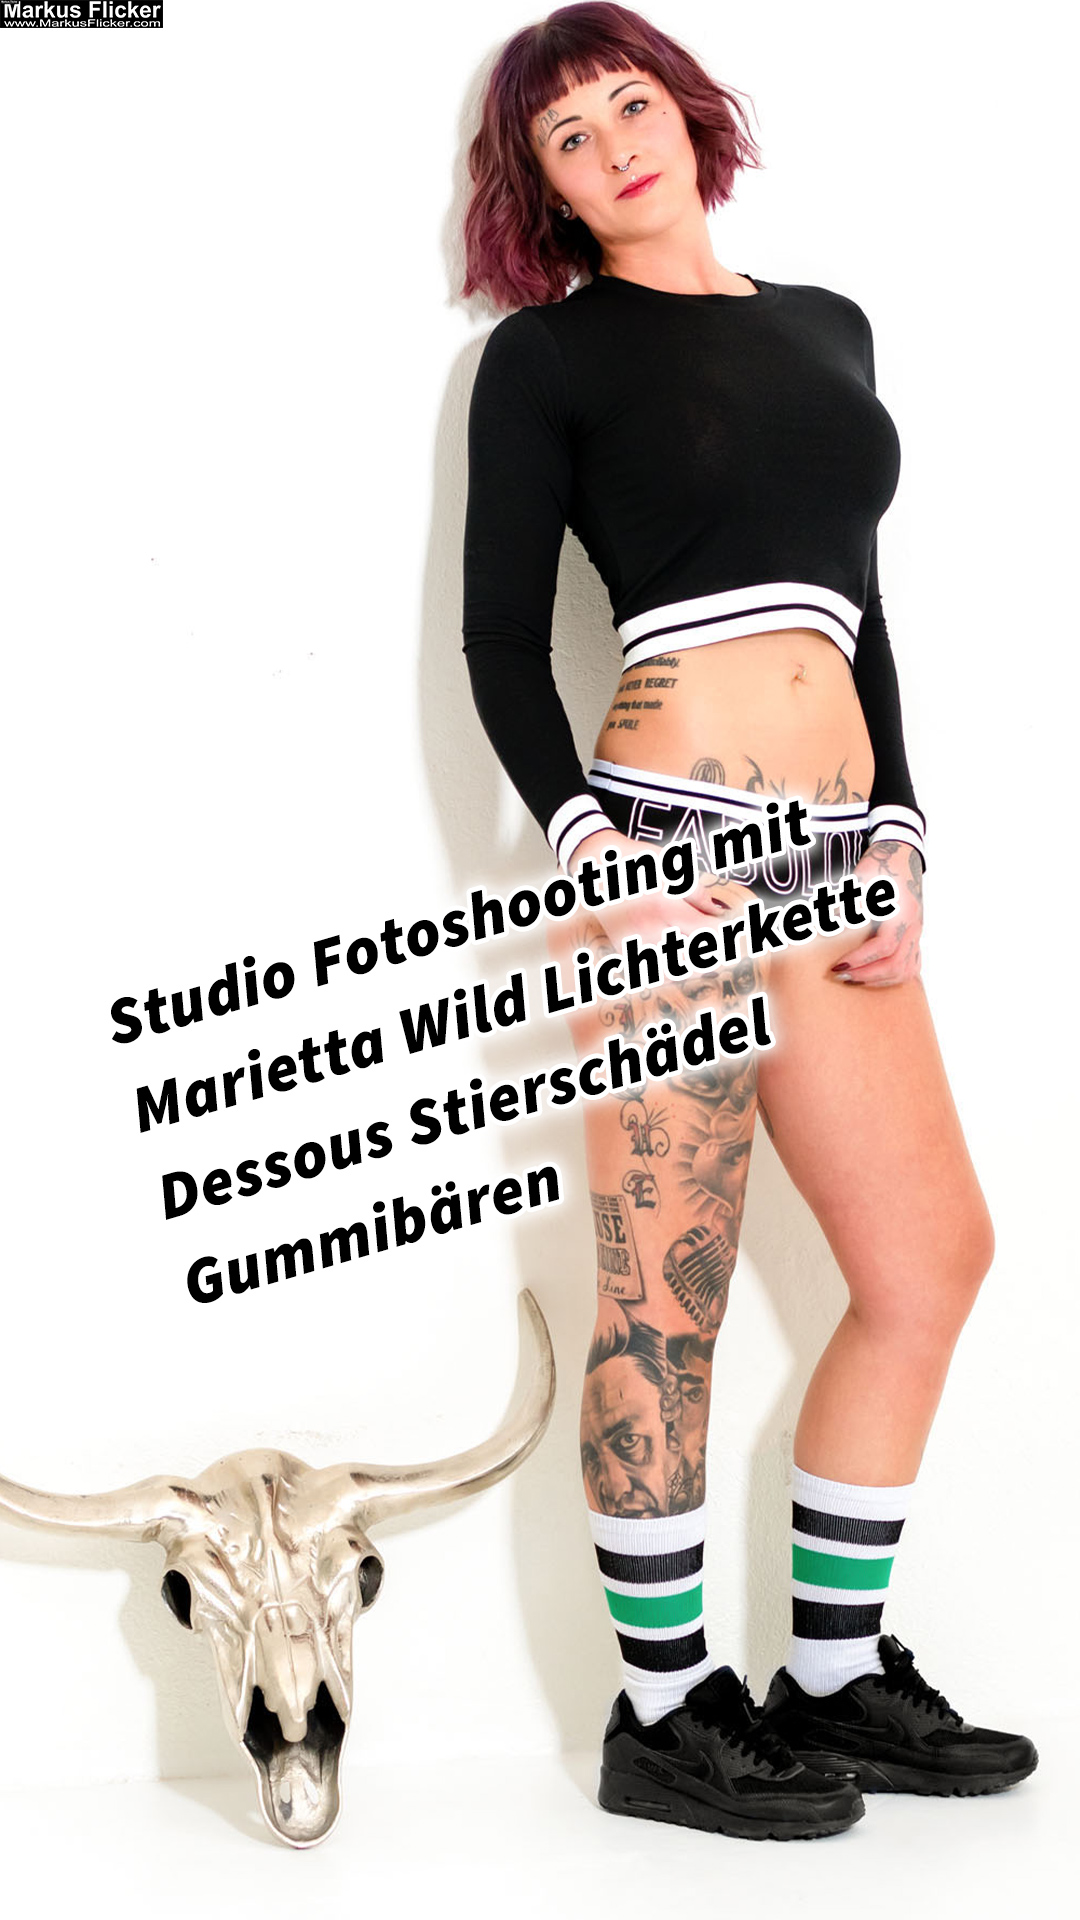 Studio Fotoshooting mit Marietta Wild Lichterkette Dessous Stierschädel Gummibären